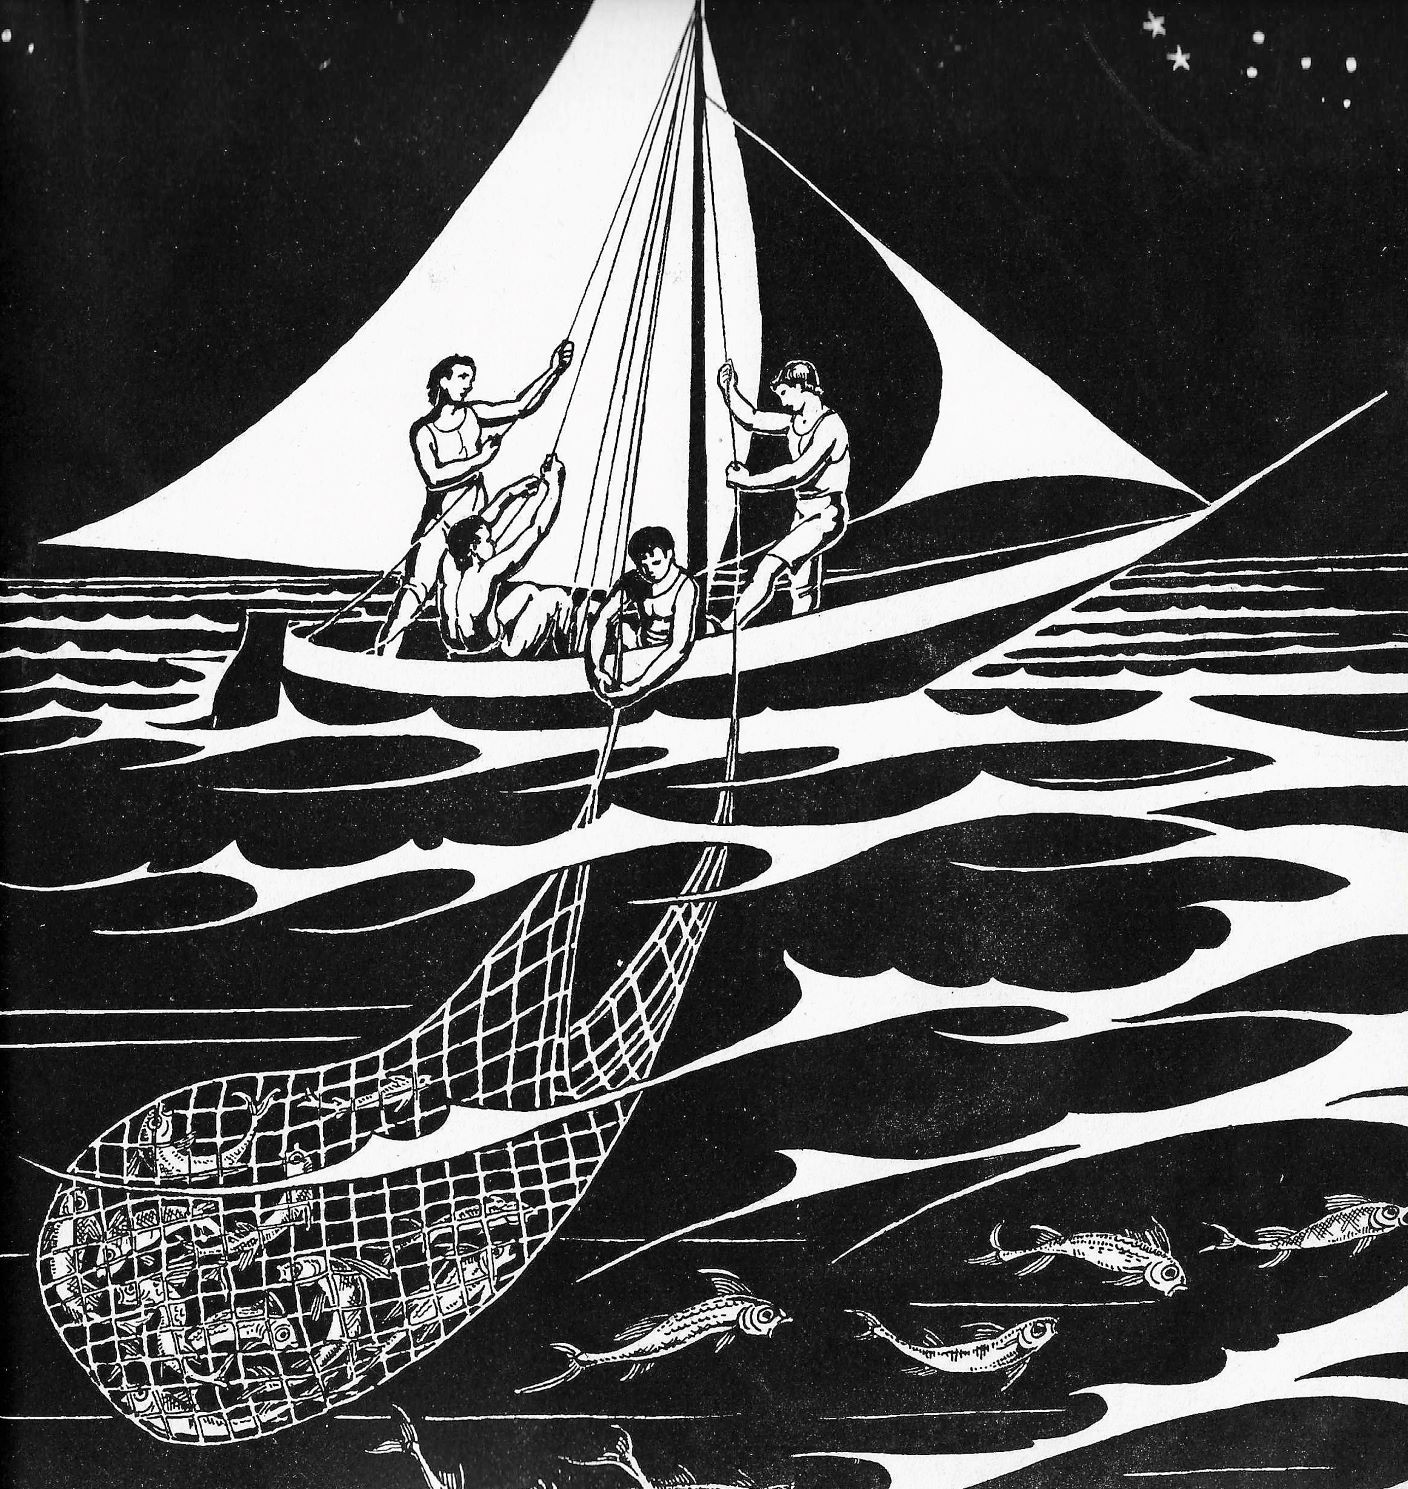  Anna Marongiu, Illustrazione per <em>La barca della fortuna</em>